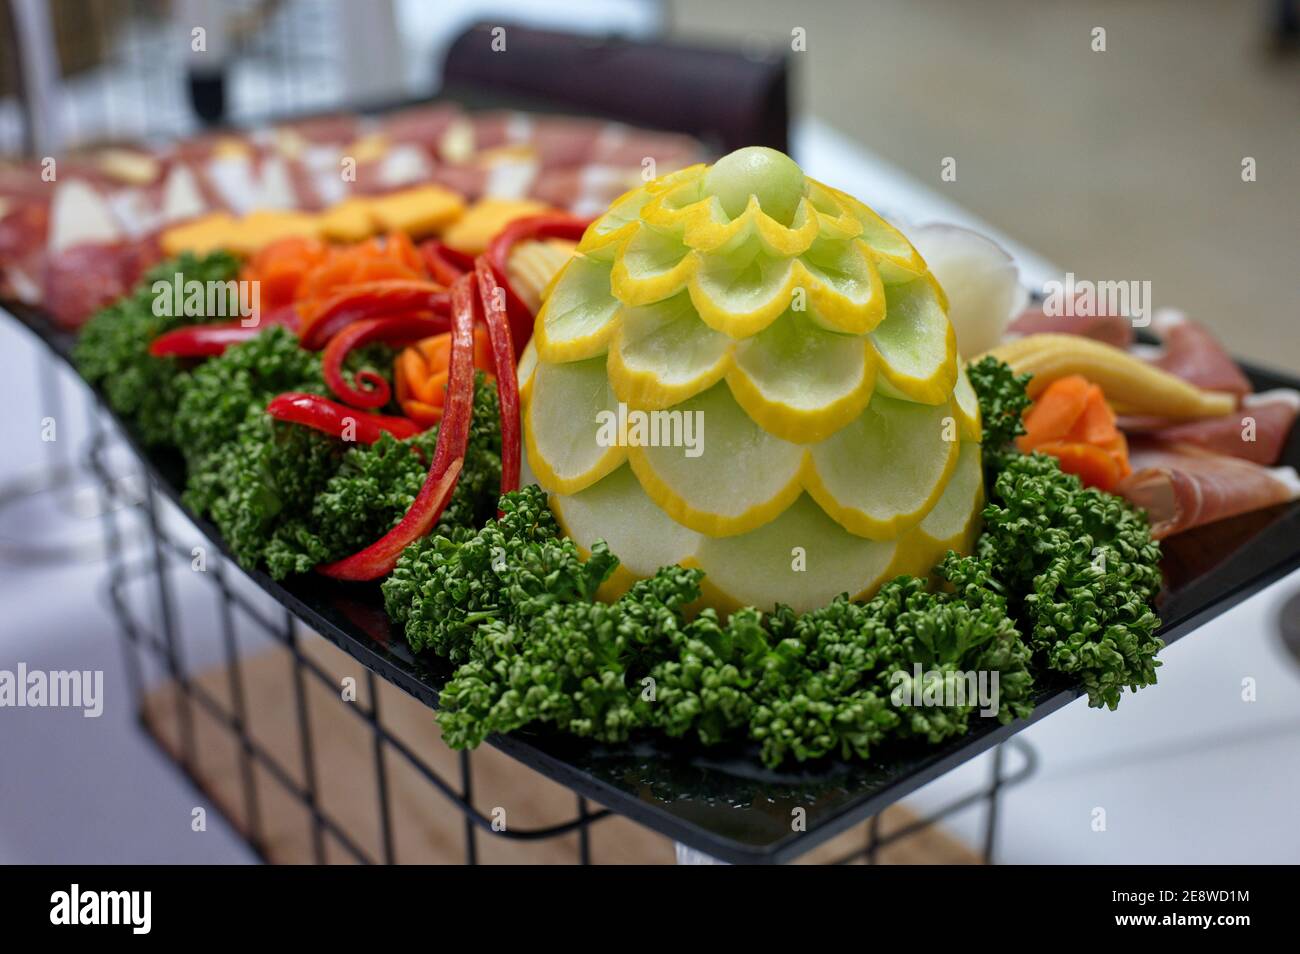 Schön dekoriertes Catering mit Gemüse, verarbeitetem Fleisch und Käse Stockfoto